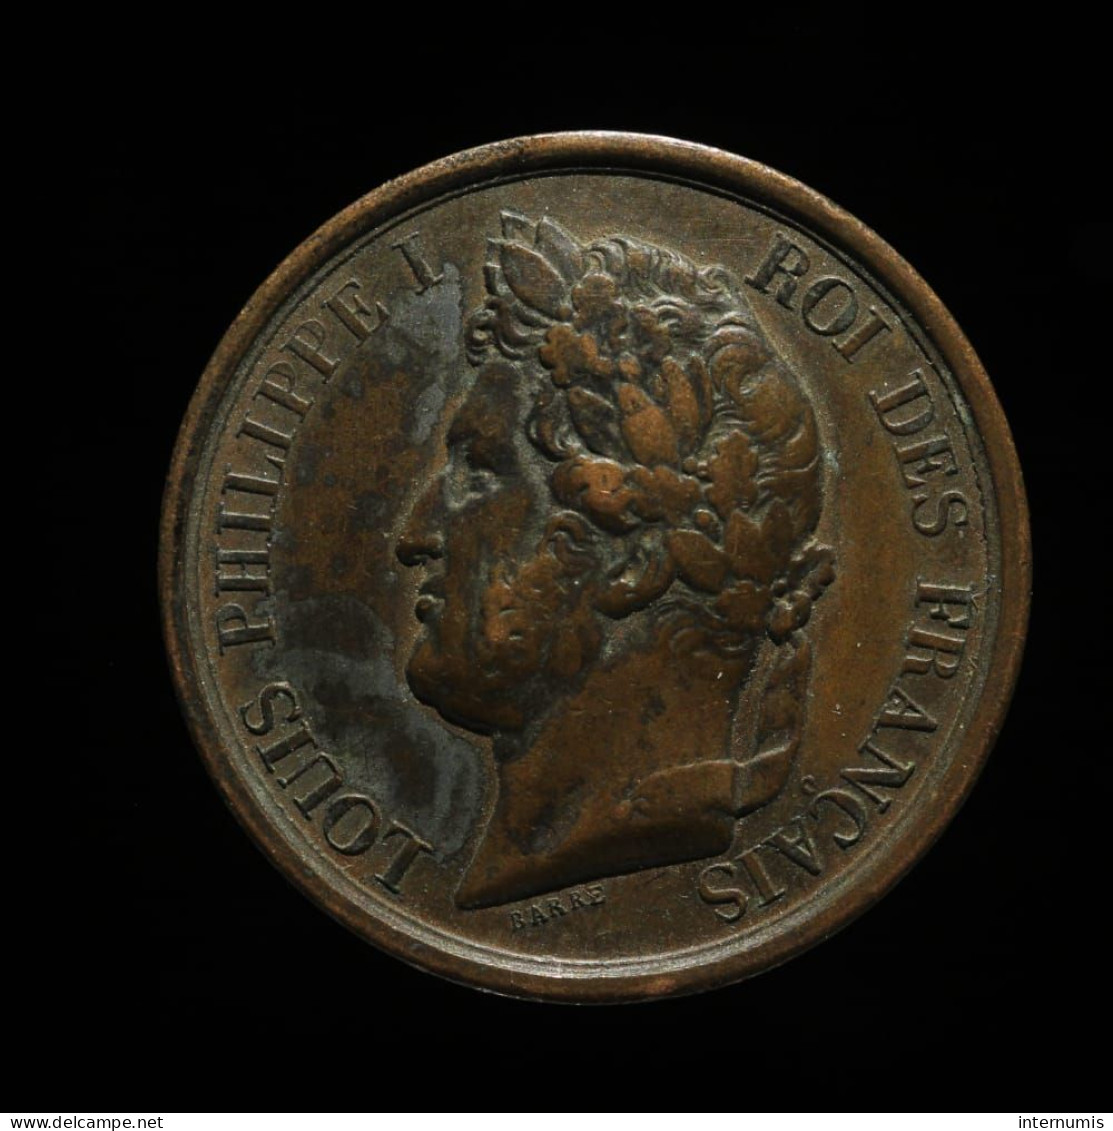 MEDAILLE / MEDAL : France, Louis-Philippe I, L'armée Au Duc D'Orleans Prince Royal, 1842, Cuivre (Copper), TTB+ (EF) - Monarquía / Nobleza